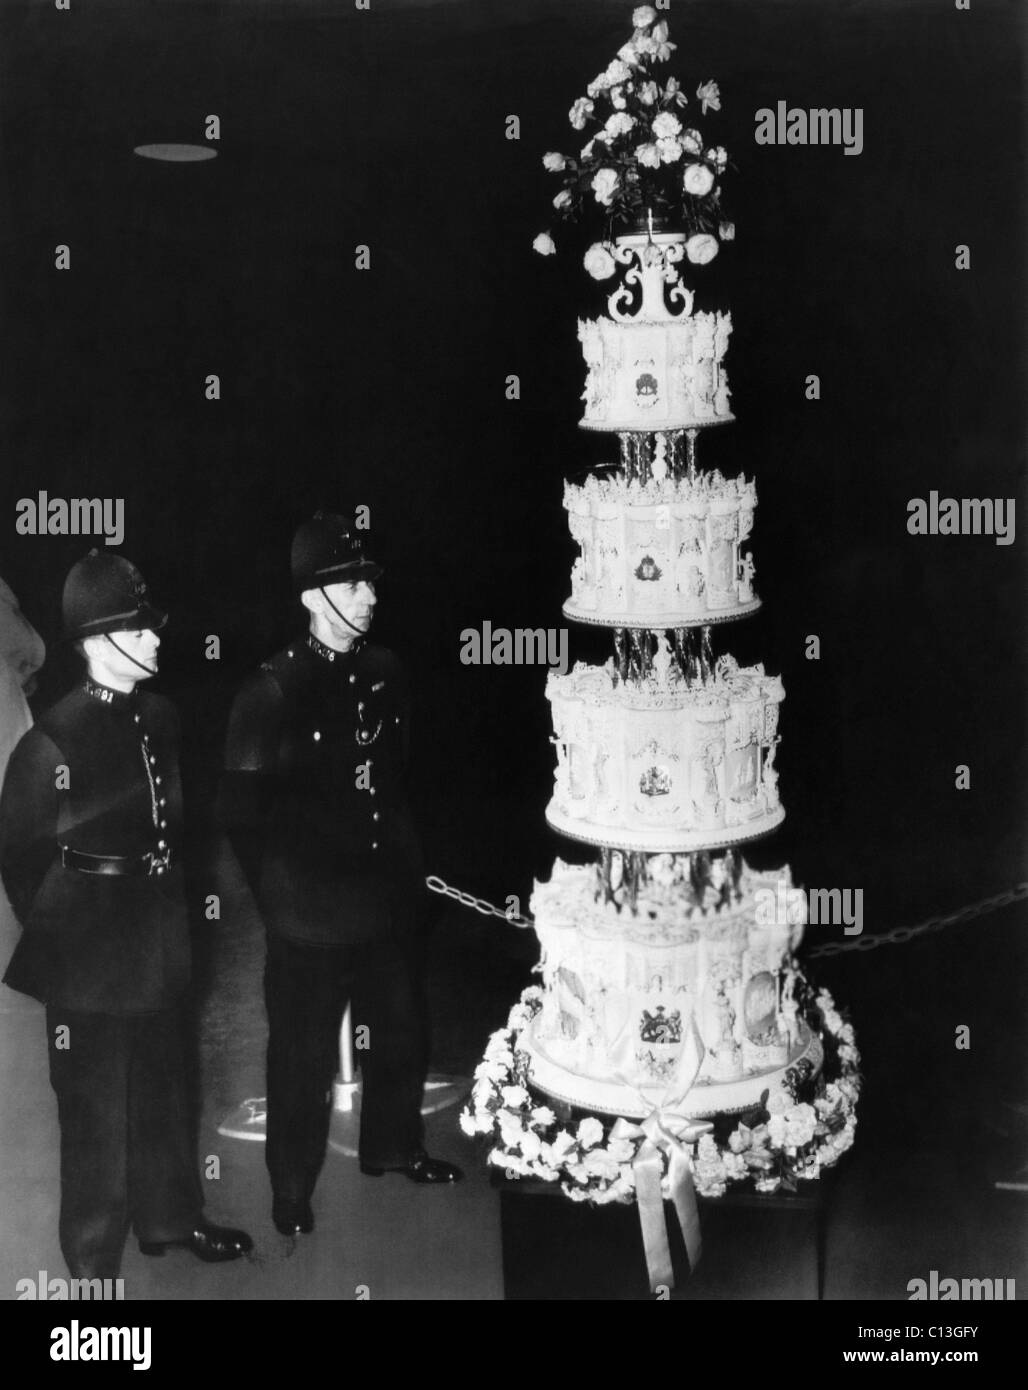 La Couronne britannique. Londres garde les gendarmes le gâteau de mariage de la future reine d'Angleterre la princesse Elizabeth et le Prince Philip, duc d'Édimbourg, Londres, Angleterre, Novembre, 1947. Banque D'Images